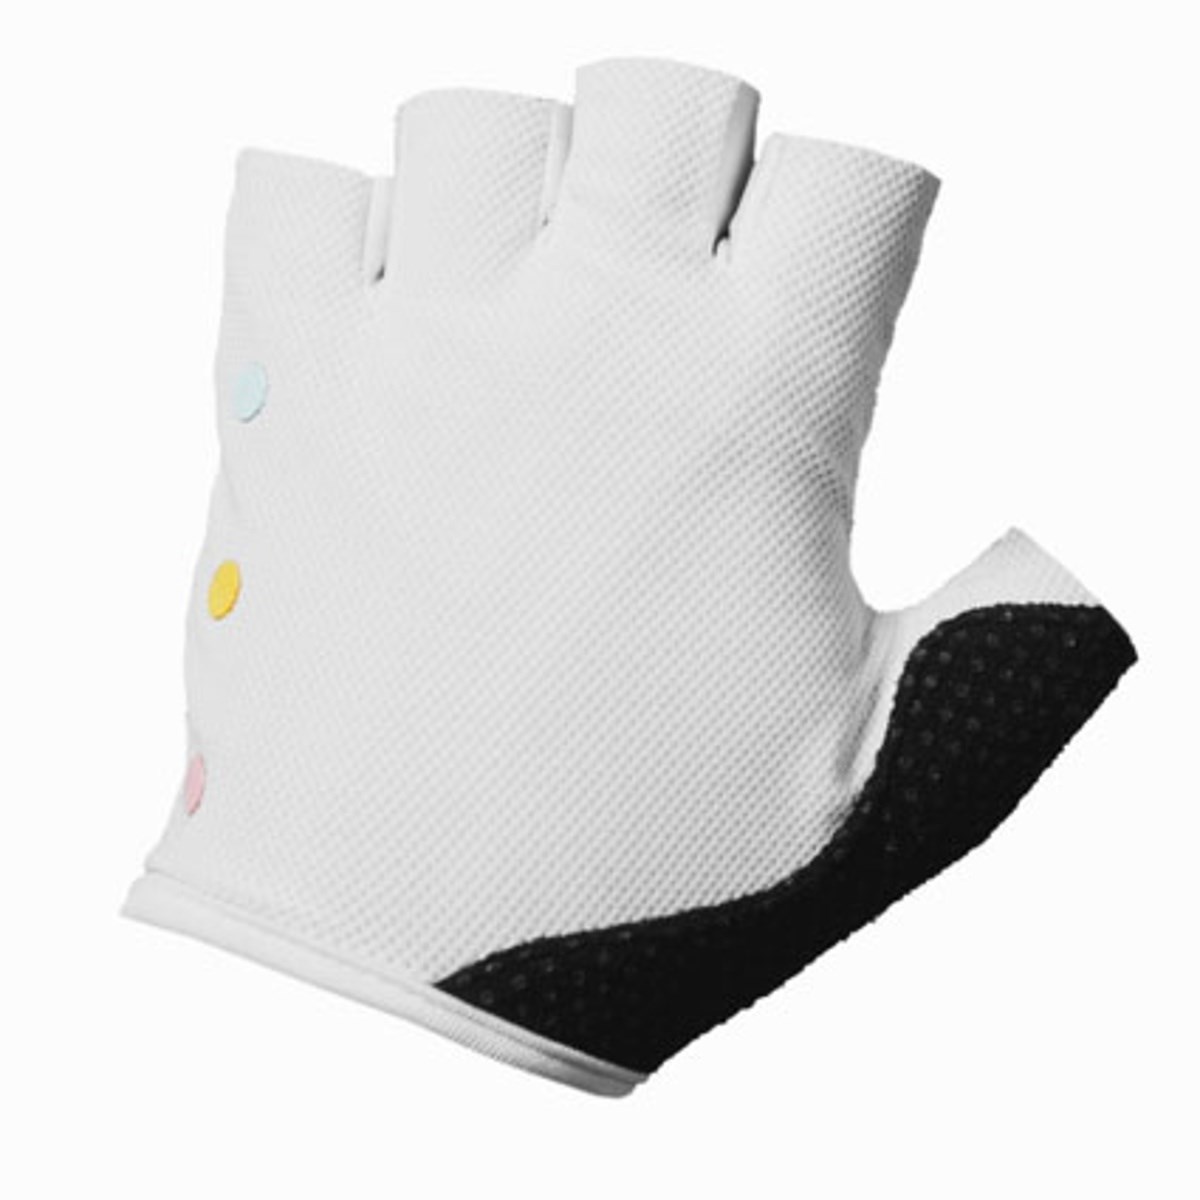 Ana Nichoola Naked Hand Gloves product image